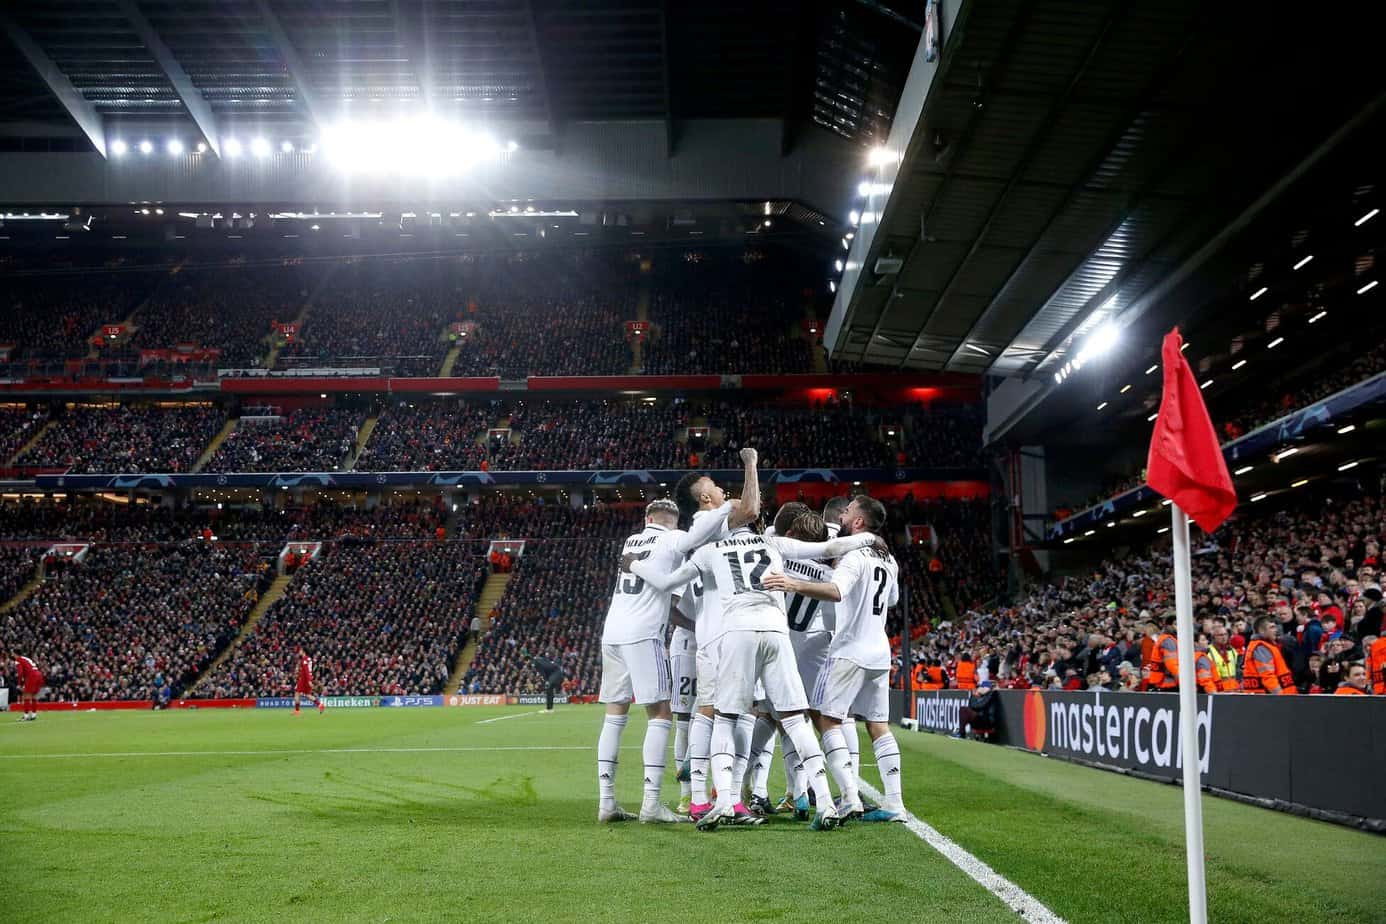 Octavos de final: Real Madrid vs.Liverpool Selección de apuestas gratuitas